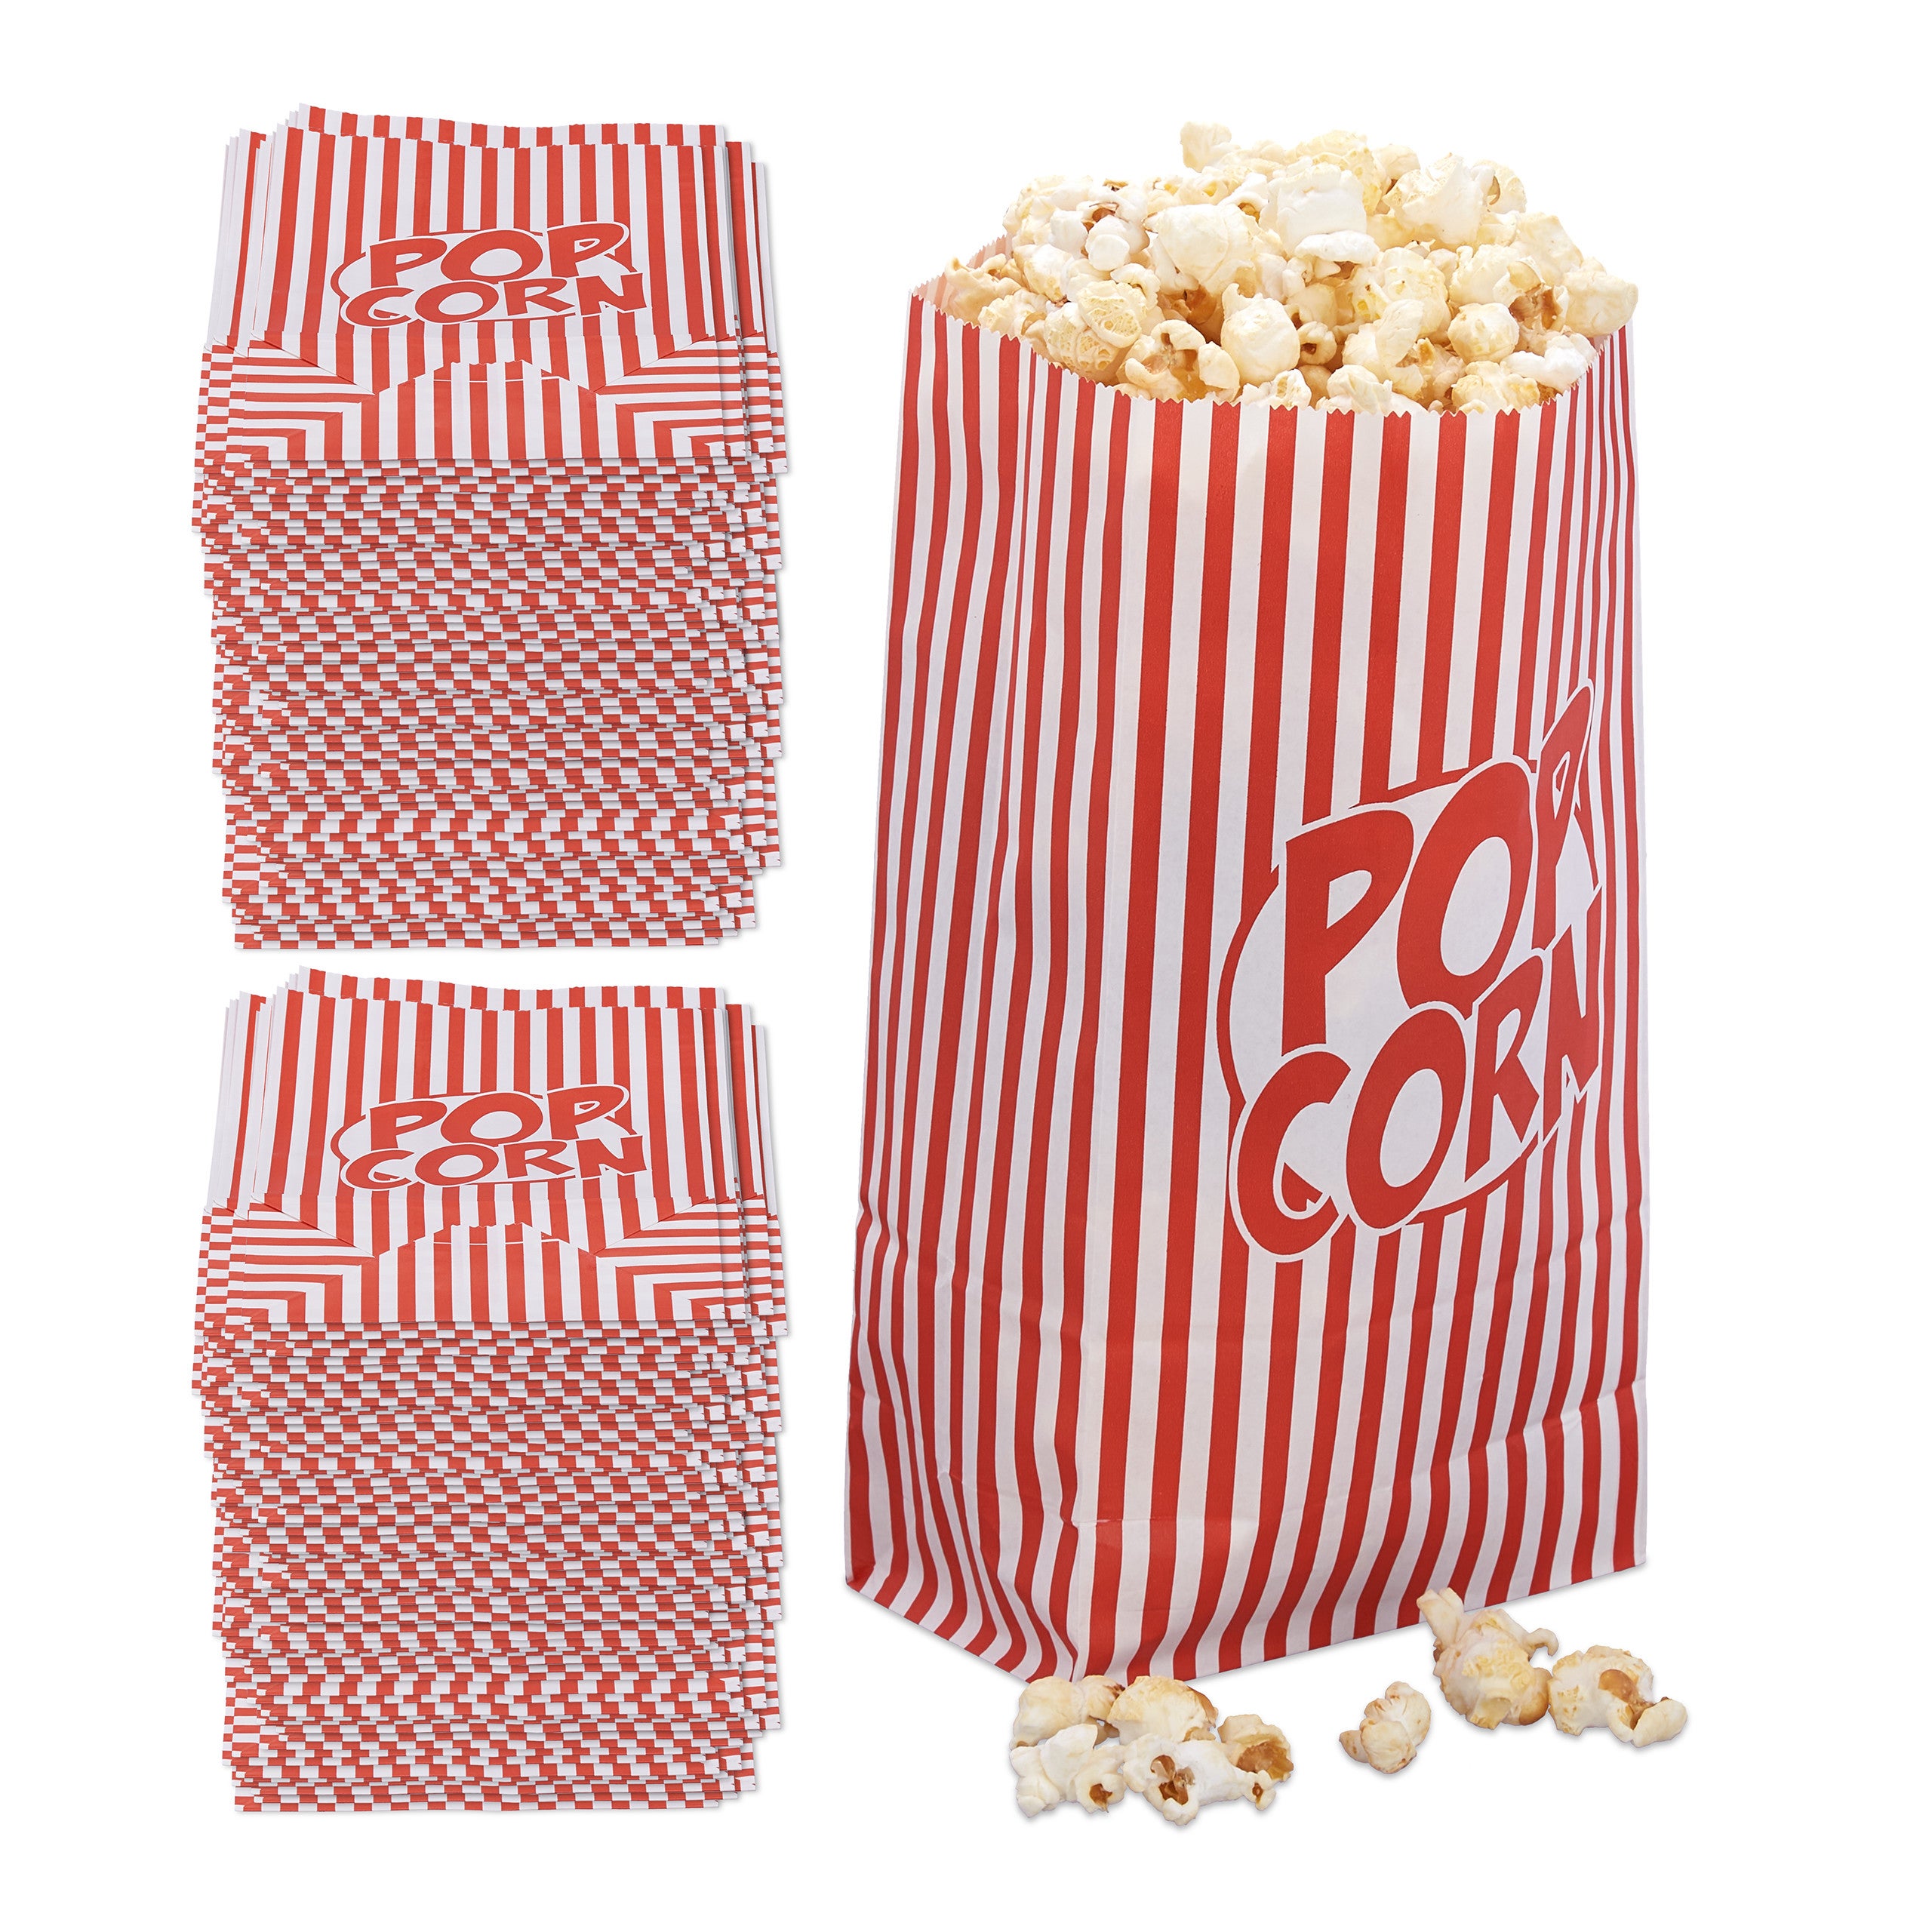 288x Sacchetti Pop Corn, Set da 288 Buste per Popcorn in Carta